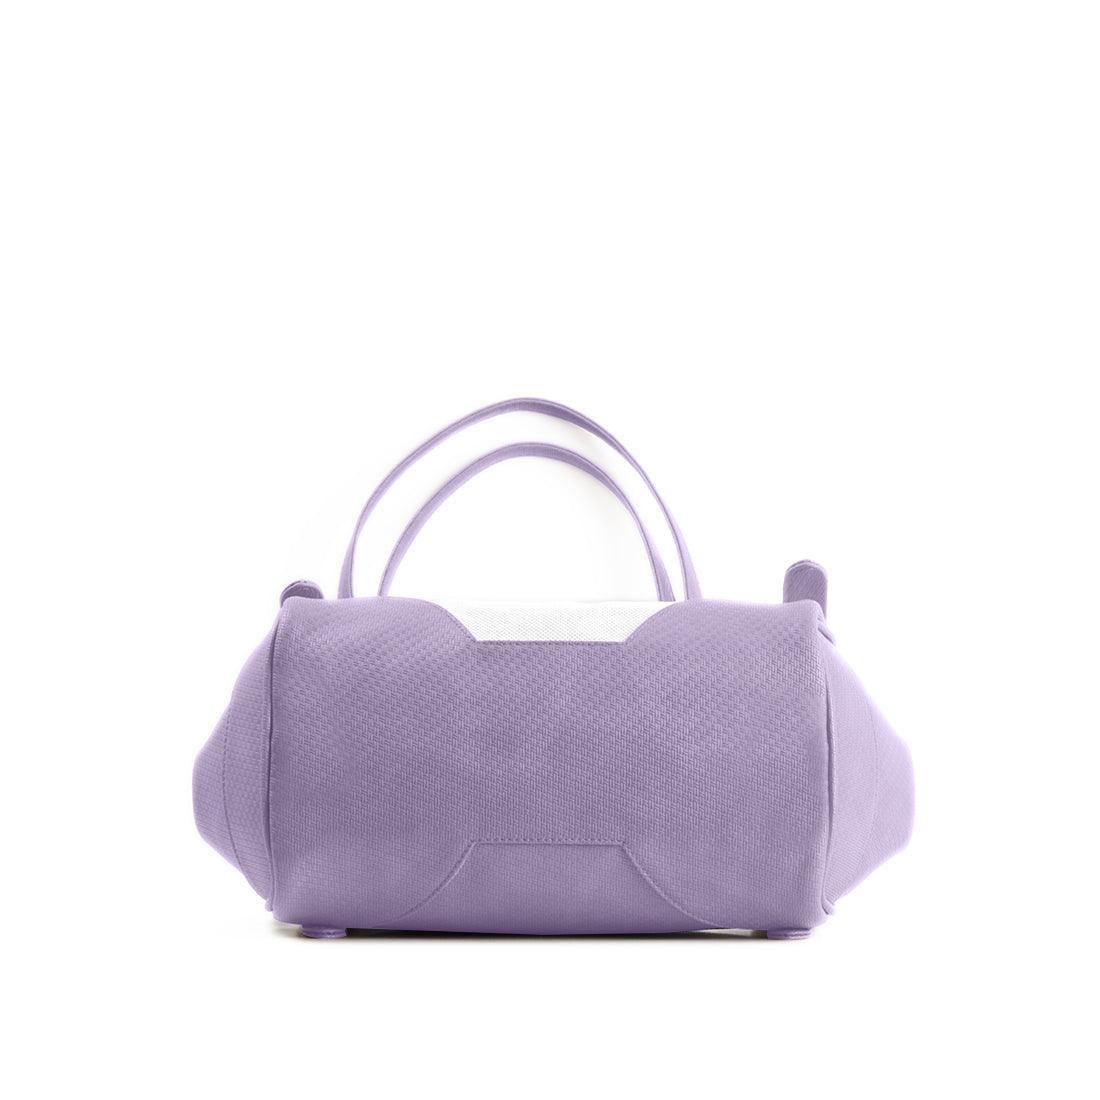 Lavender Leather Tote Bag Vaporwave - CANVAEGYPT